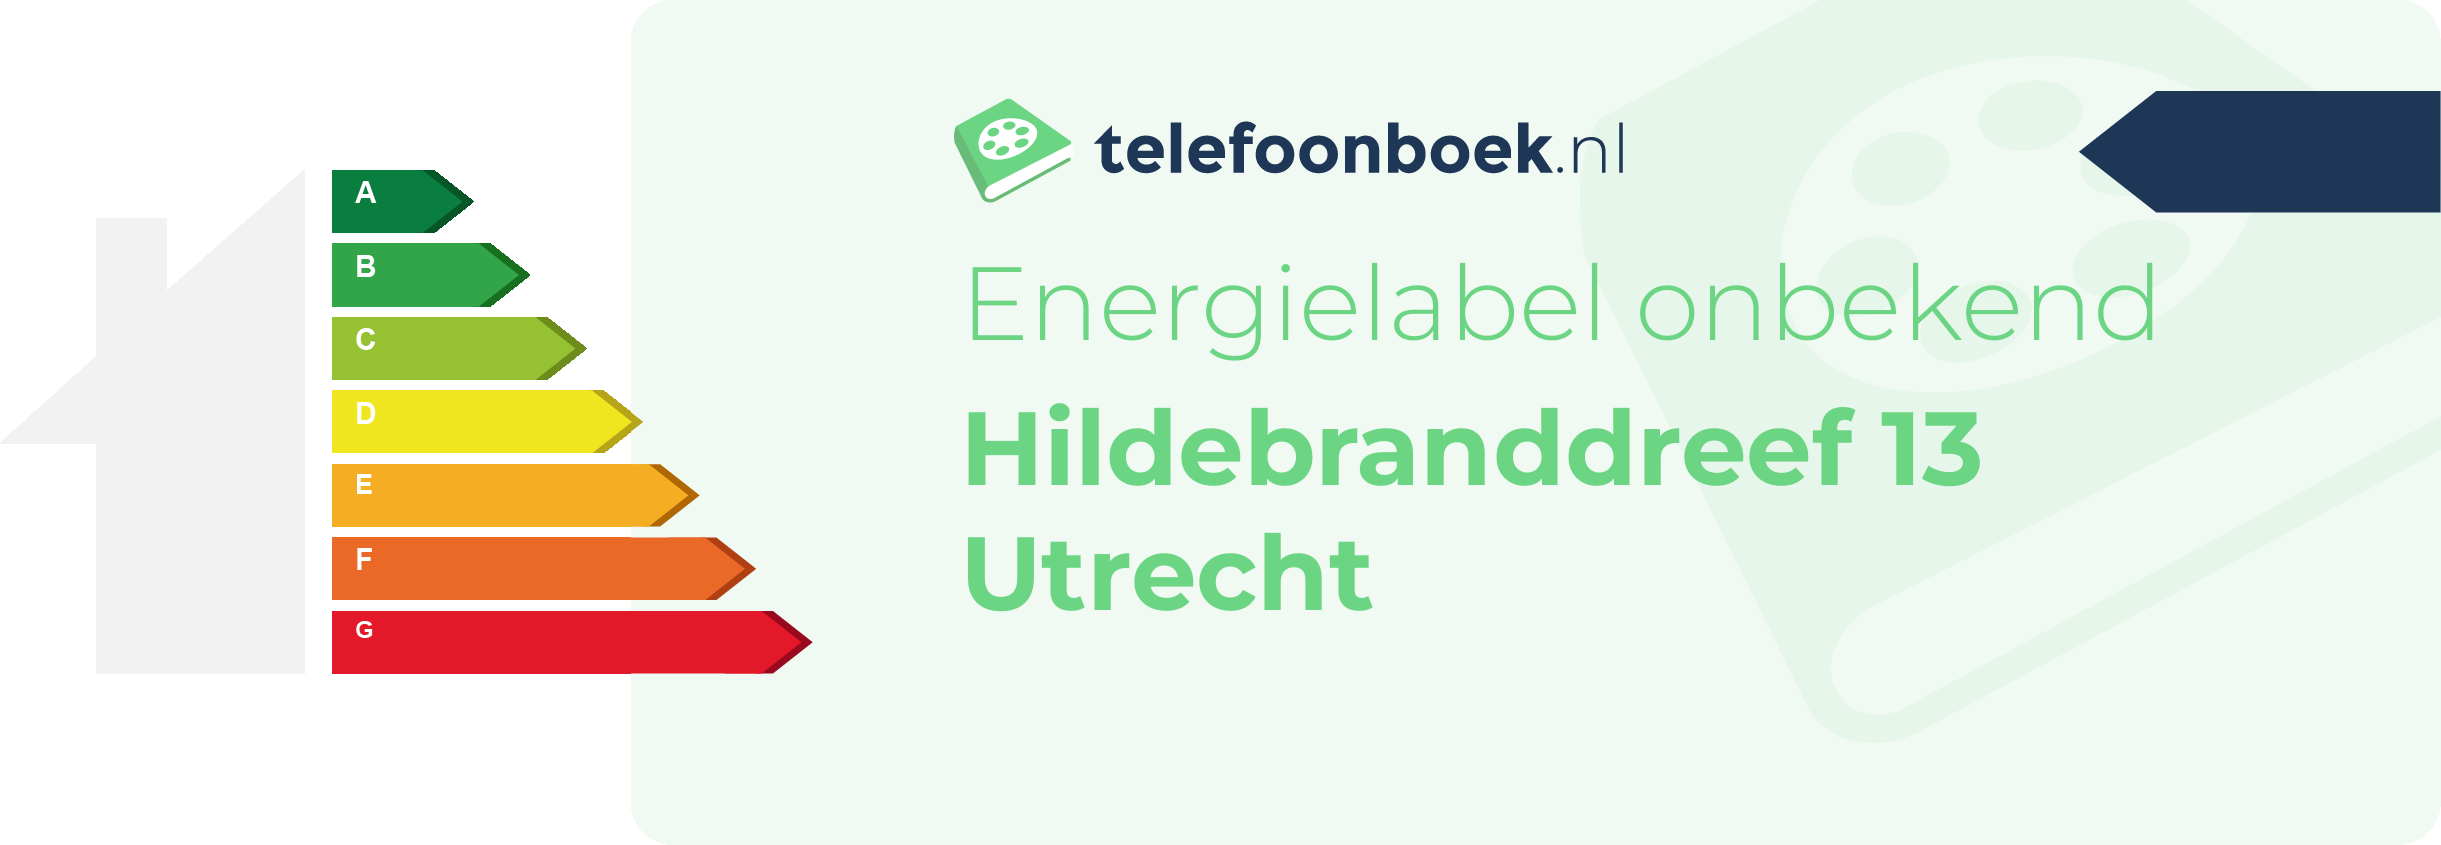 Energielabel Hildebranddreef 13 Utrecht